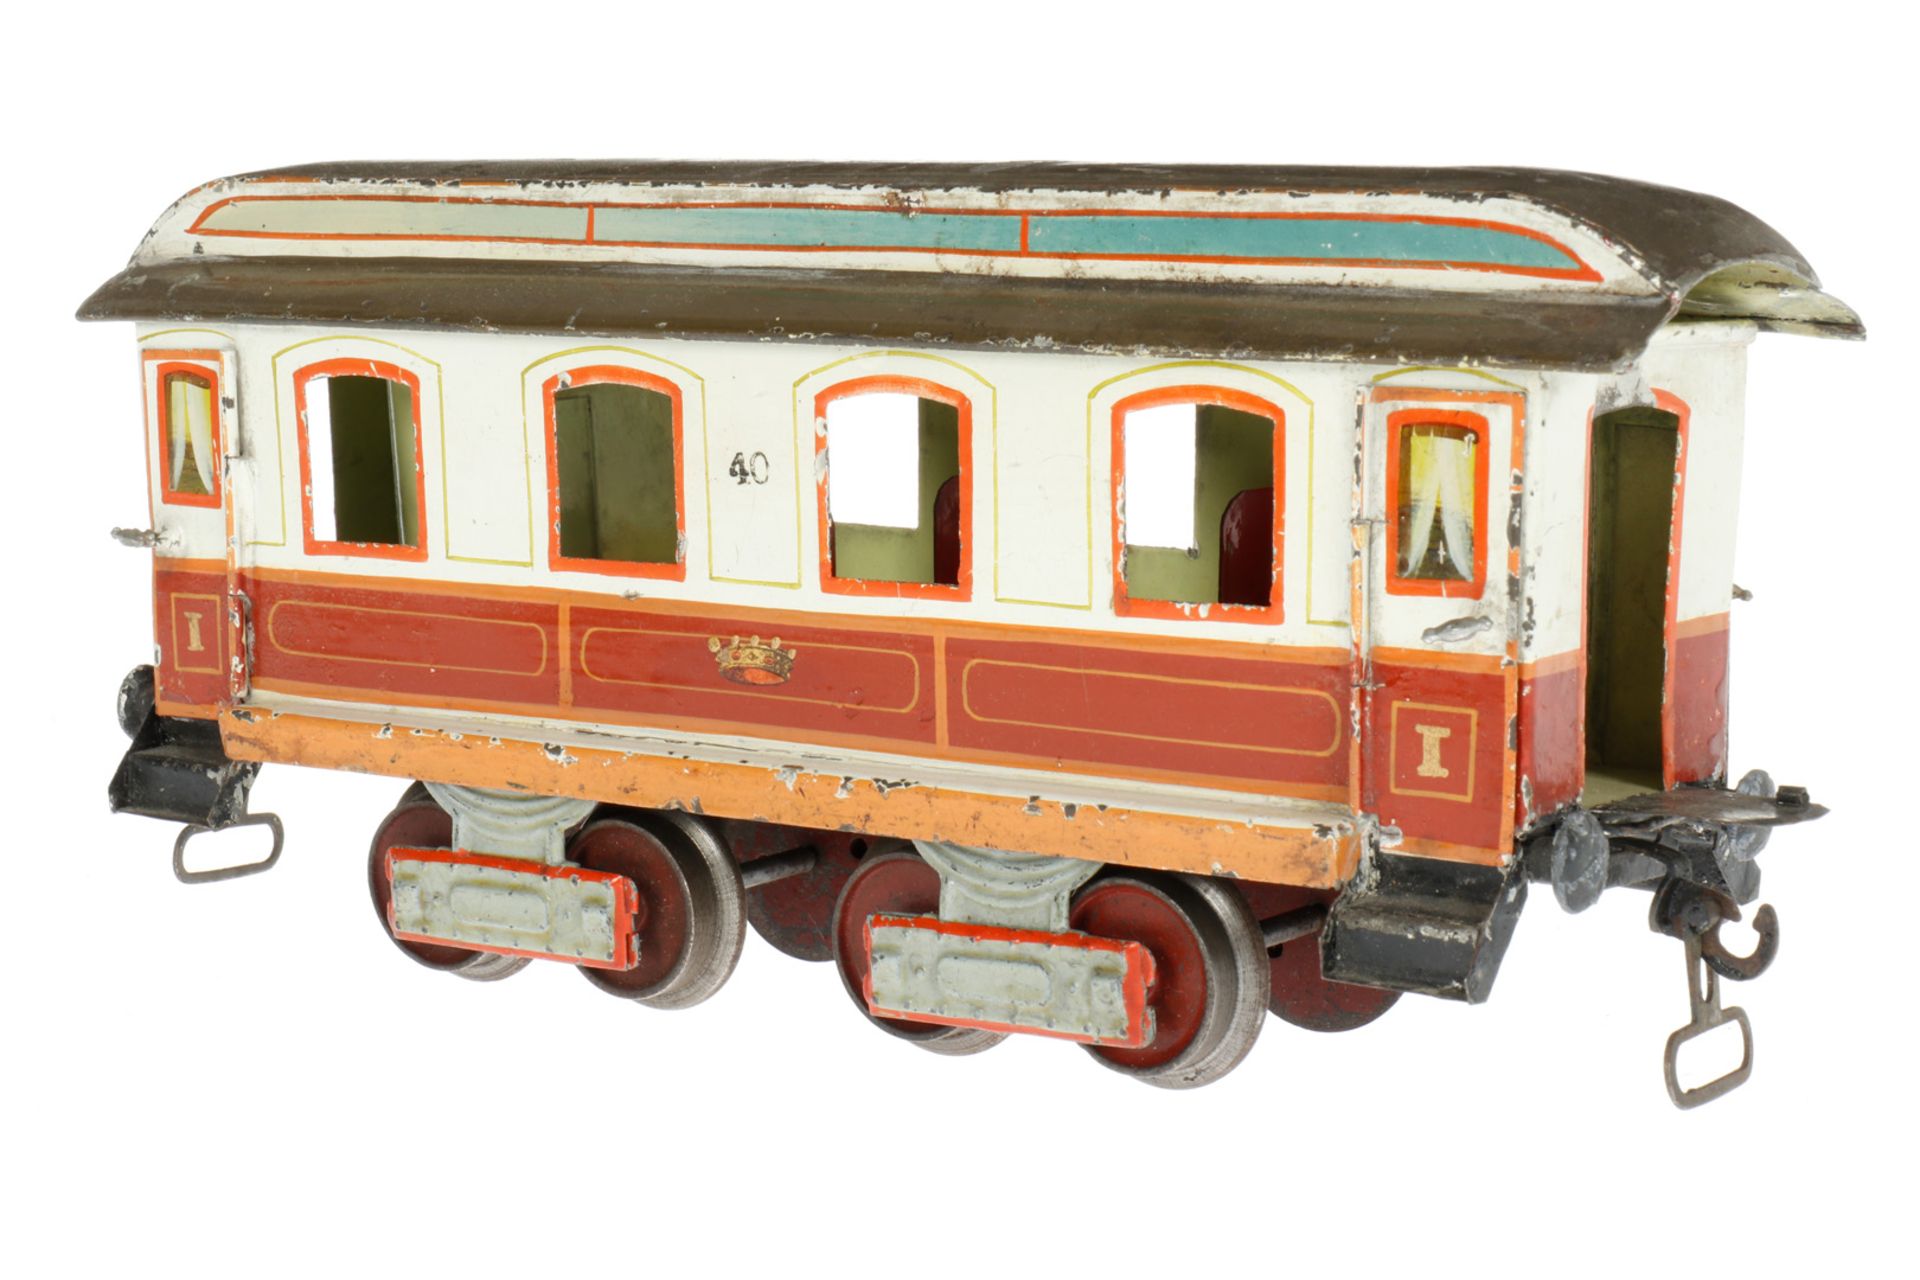 Märklin Schlafwagen “40“ 1843 K, S 1, uralt, braun/weiß, HL, mit Inneneinrichtung (Betten und - Bild 2 aus 6